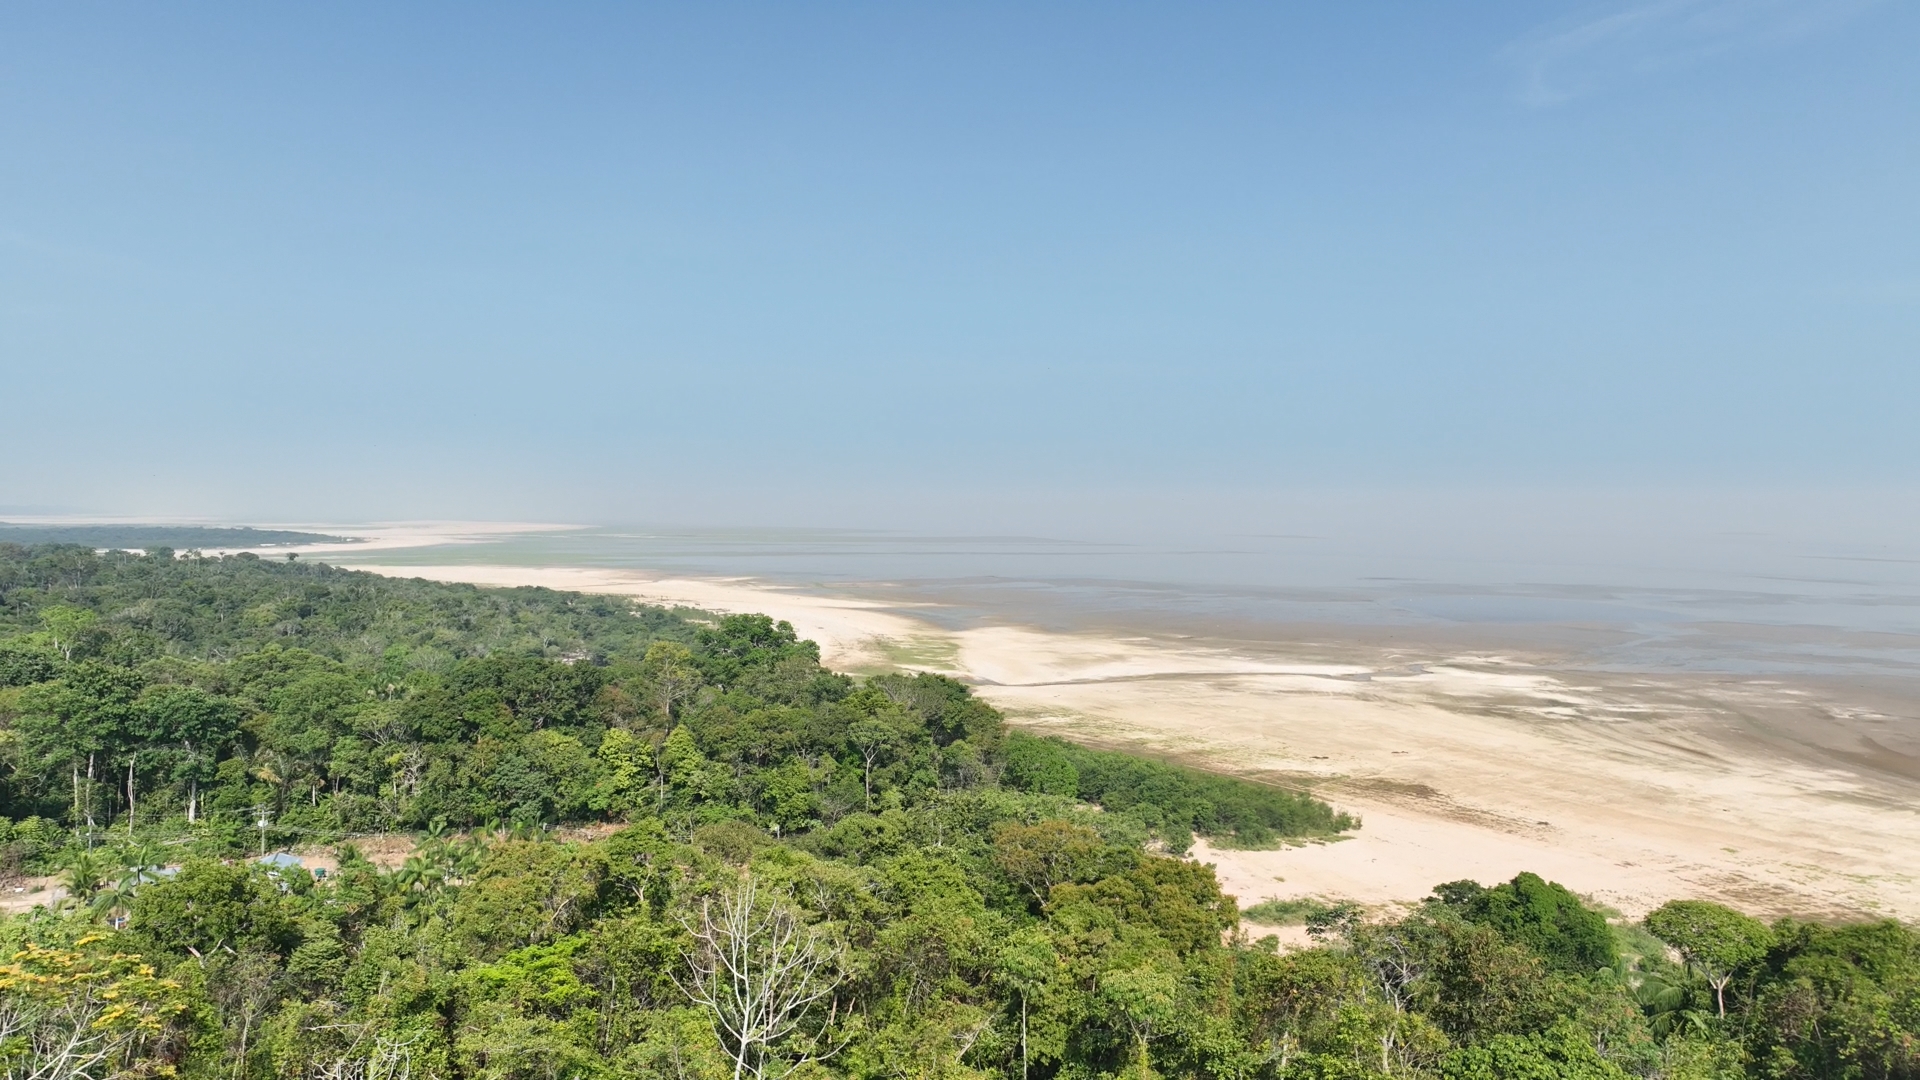 Desde 23 de setembro, com a seca se alastrando fortemente pela Amazônia e a temperatura da água subindo, 153 botos foram encontrados mortos na região de Tefé, Amazonas